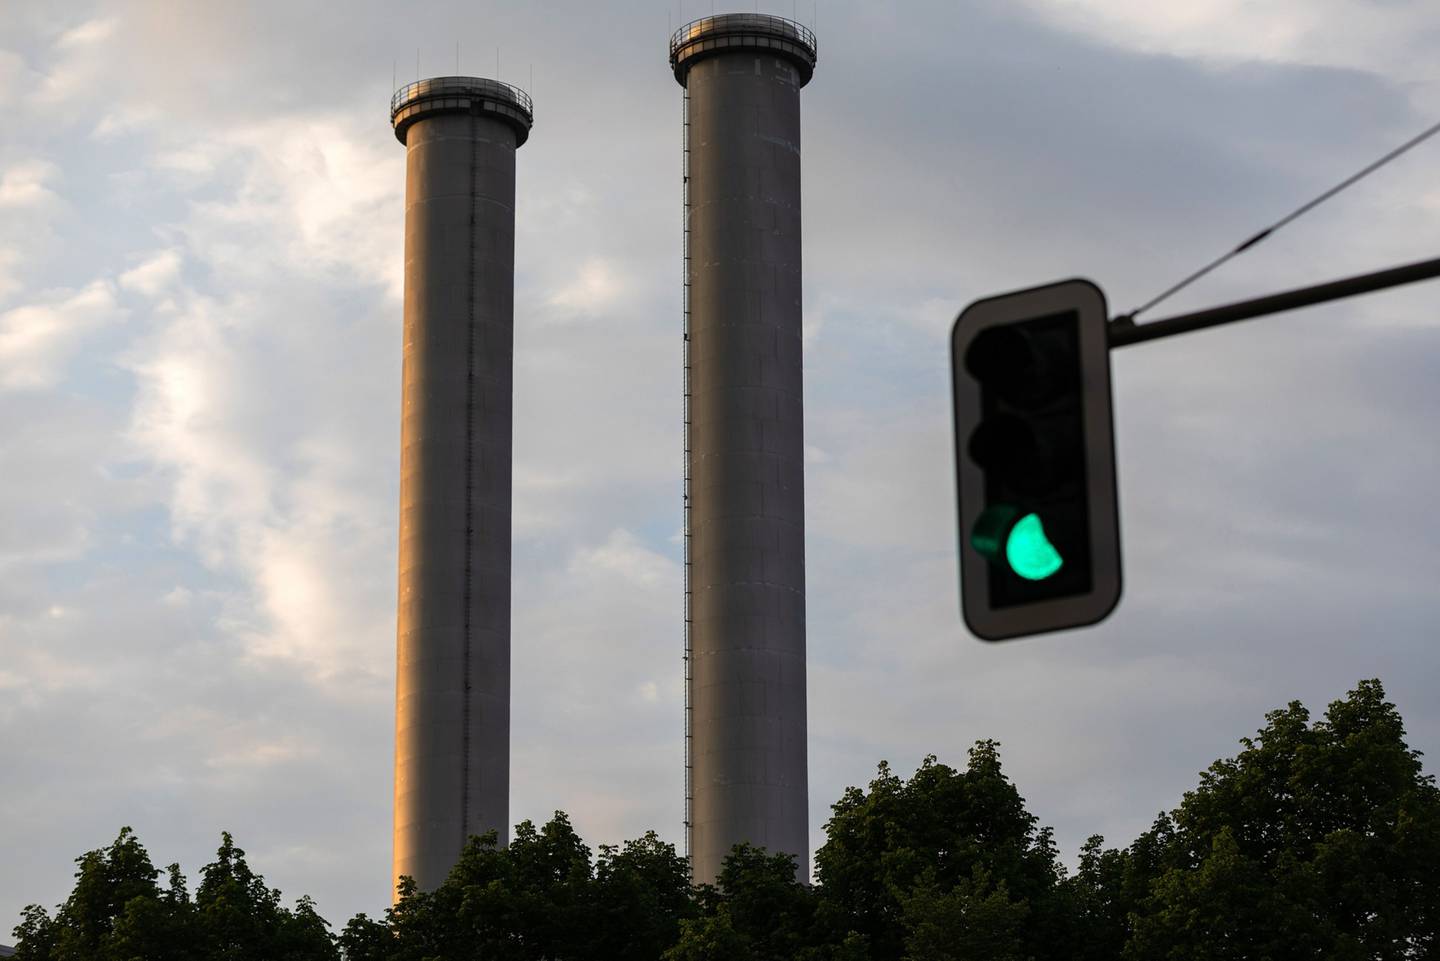 Las chimeneas de la central eléctrica de gas natural Mitte, operada por Vattenfall AB y una señal de tráfico verde en Berlín, Alemania, el martes 17 de mayo de 2022.